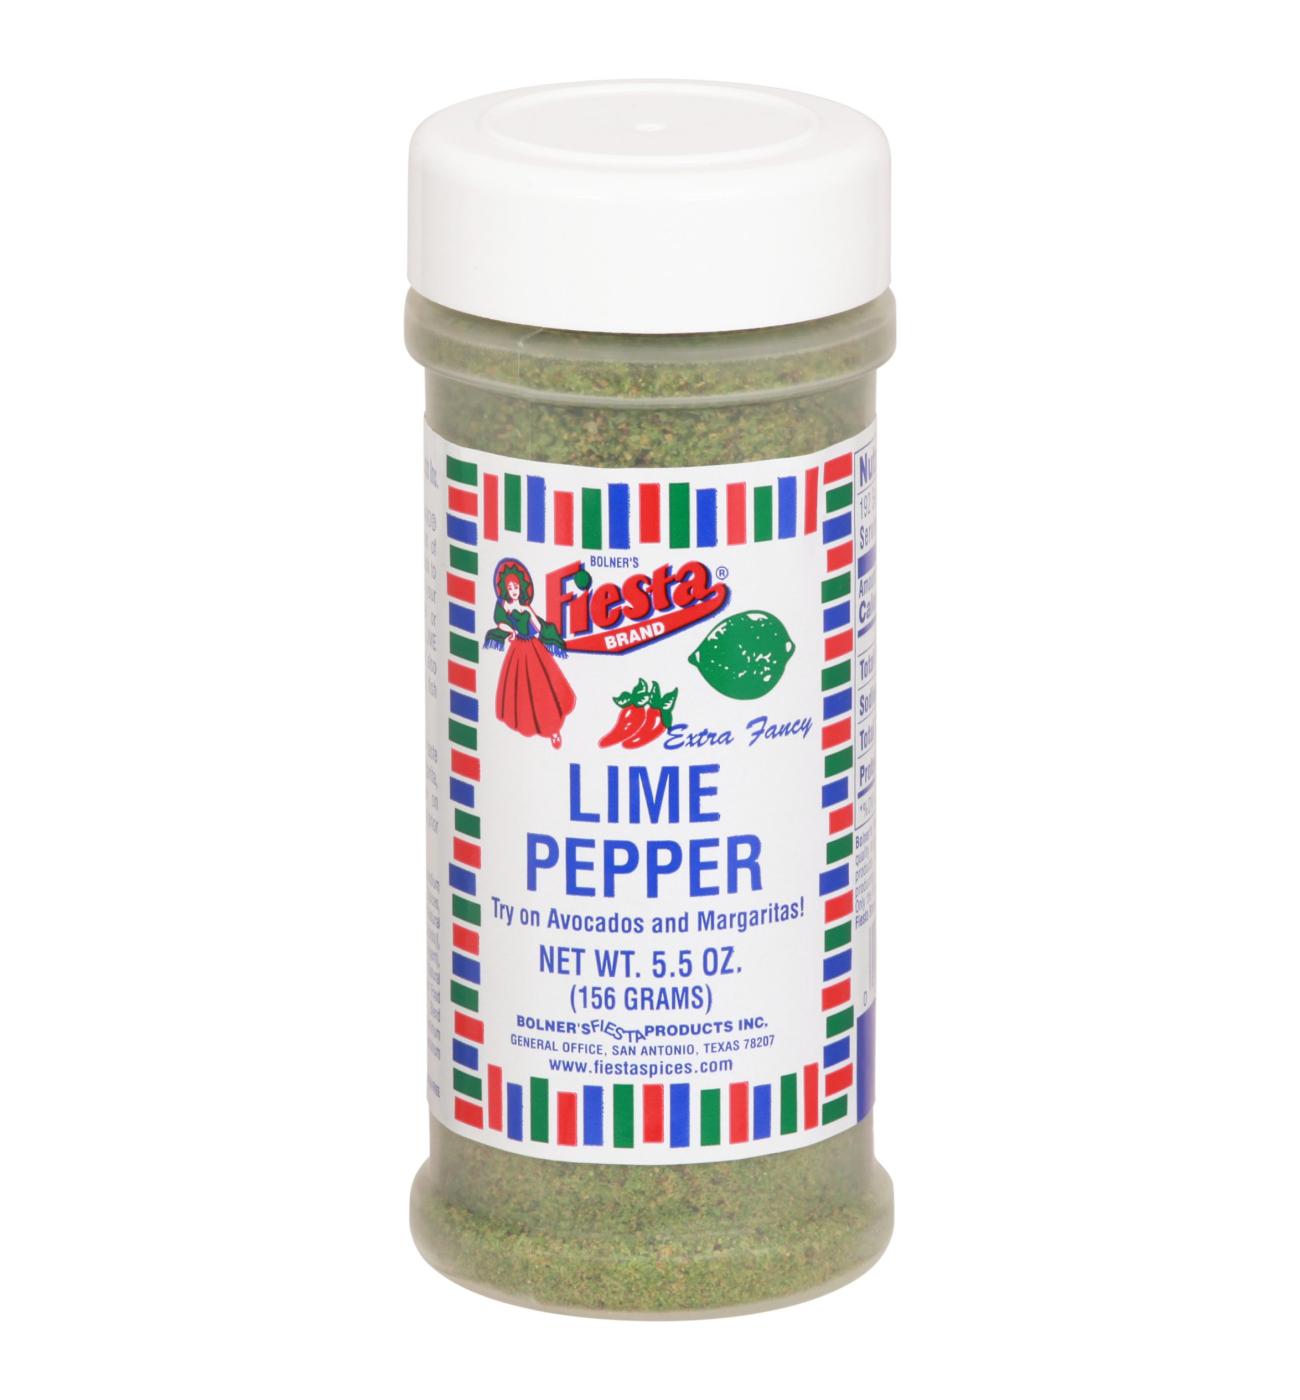 Bolner's Fiesta Lime Pepper; image 1 of 2